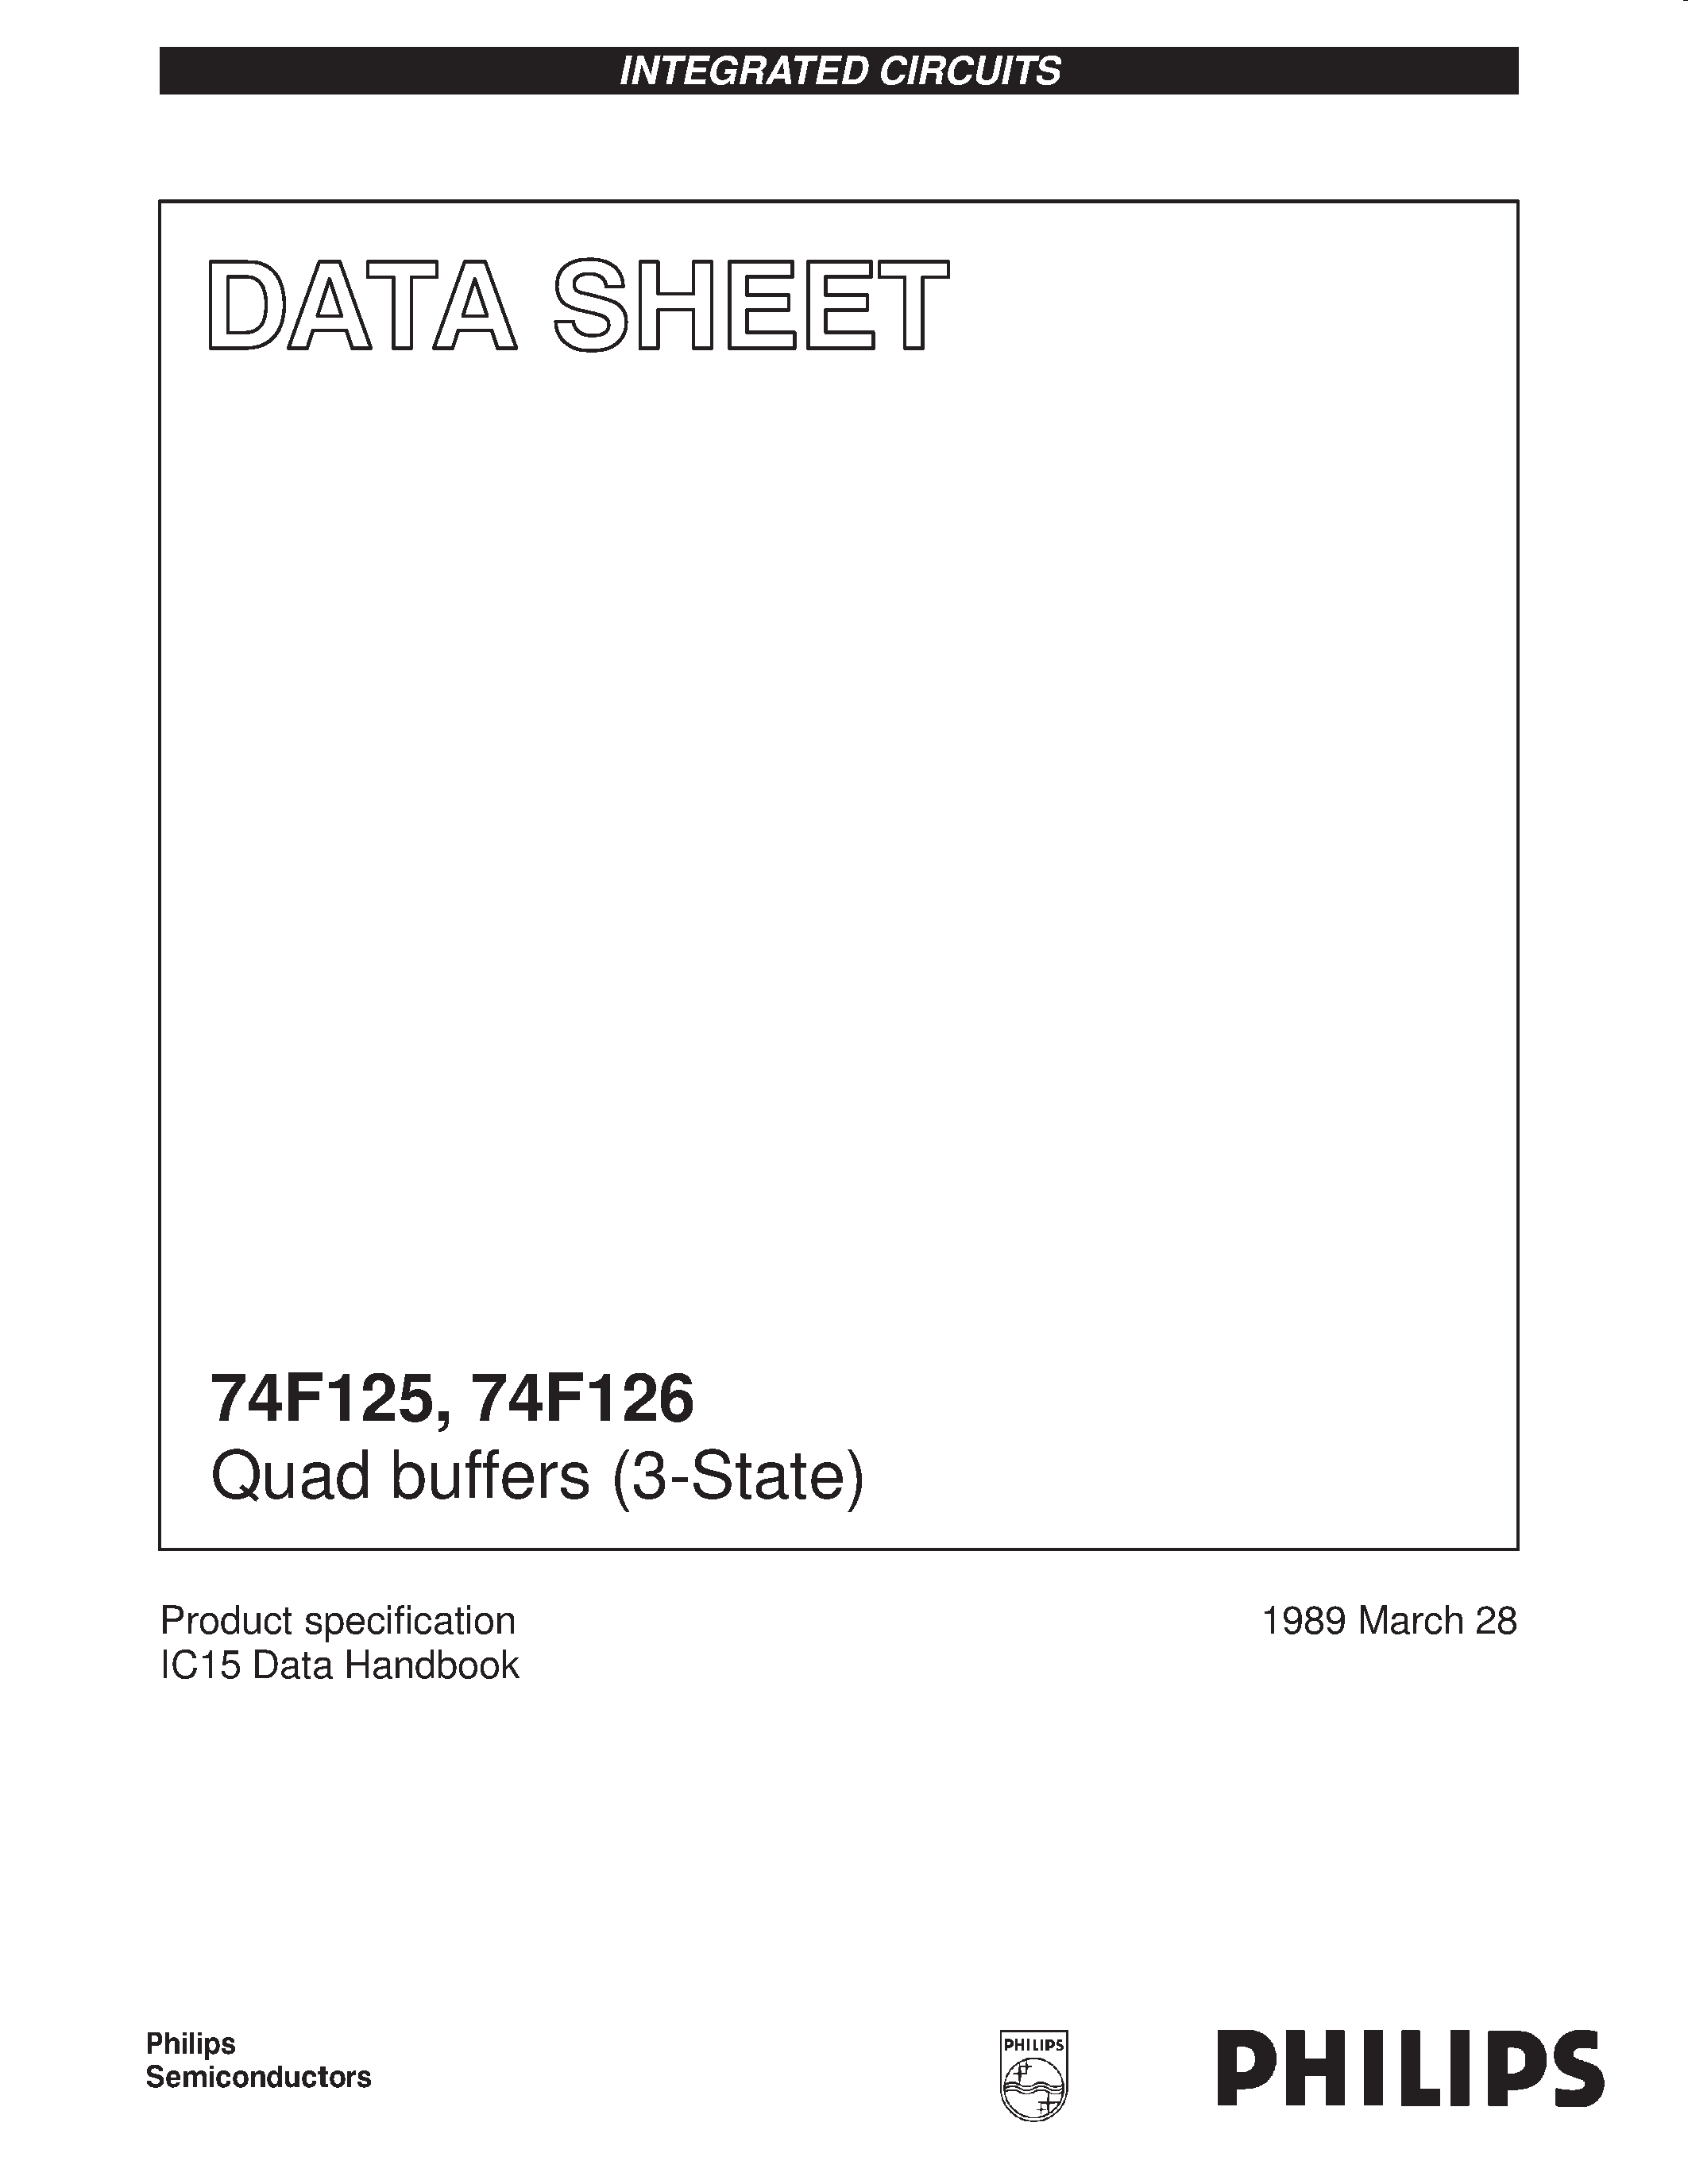 Даташит 74F125 - Quad buffers 3-State страница 1